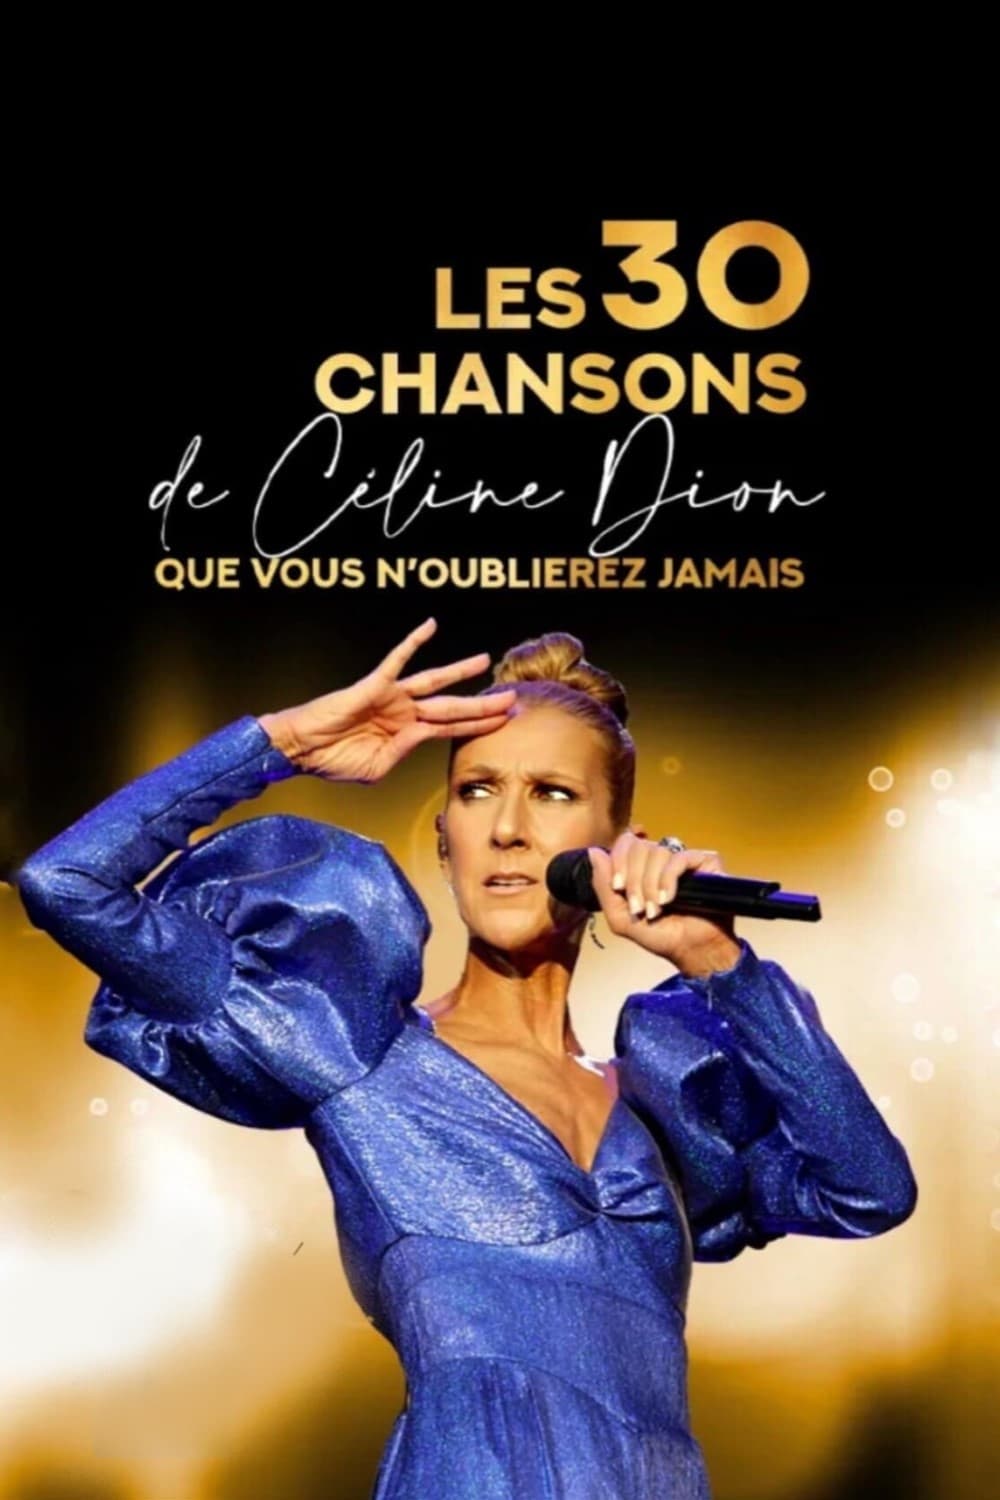 Les 30 chansons de Céline Dion que vous n'oublierez jamais